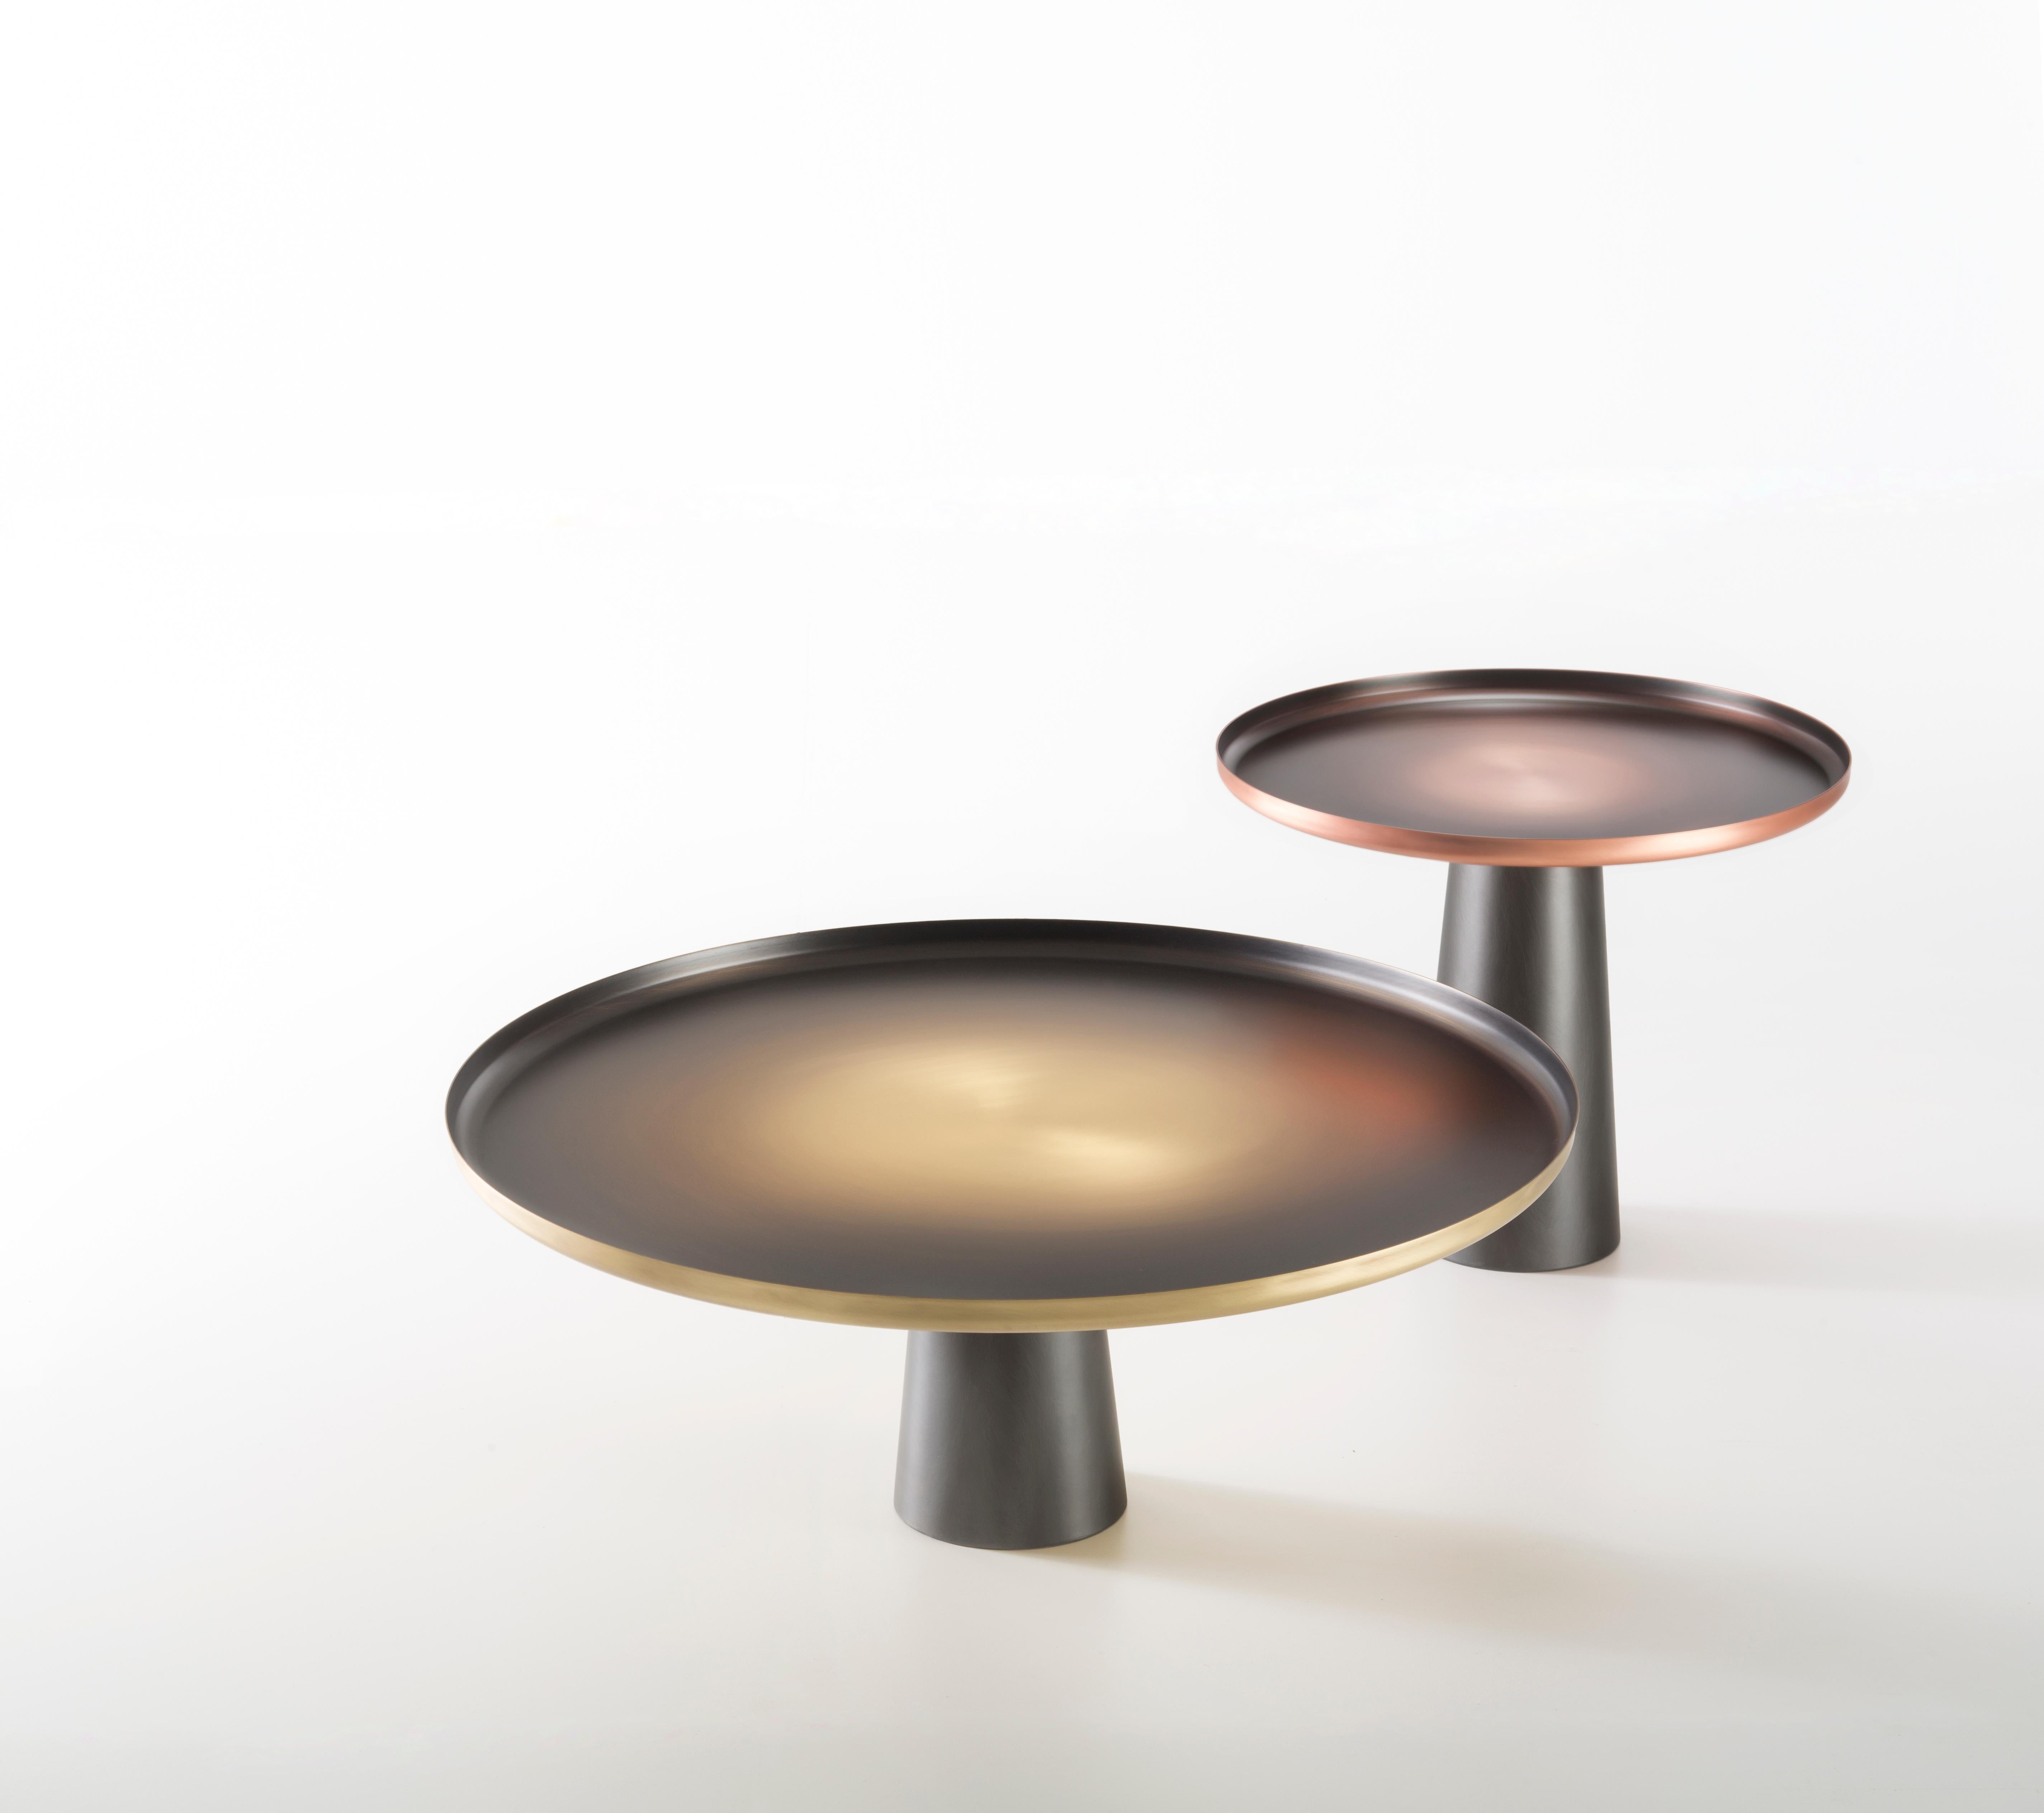 Deux tables d'appoint, telles de grands soleils, mettent en valeur les caractéristiques texturales et chromatiques du cuivre et du laiton. Contrastant avec le fer DeLabré de la base, le plateau est ennobli par une finition artisanale. La matière